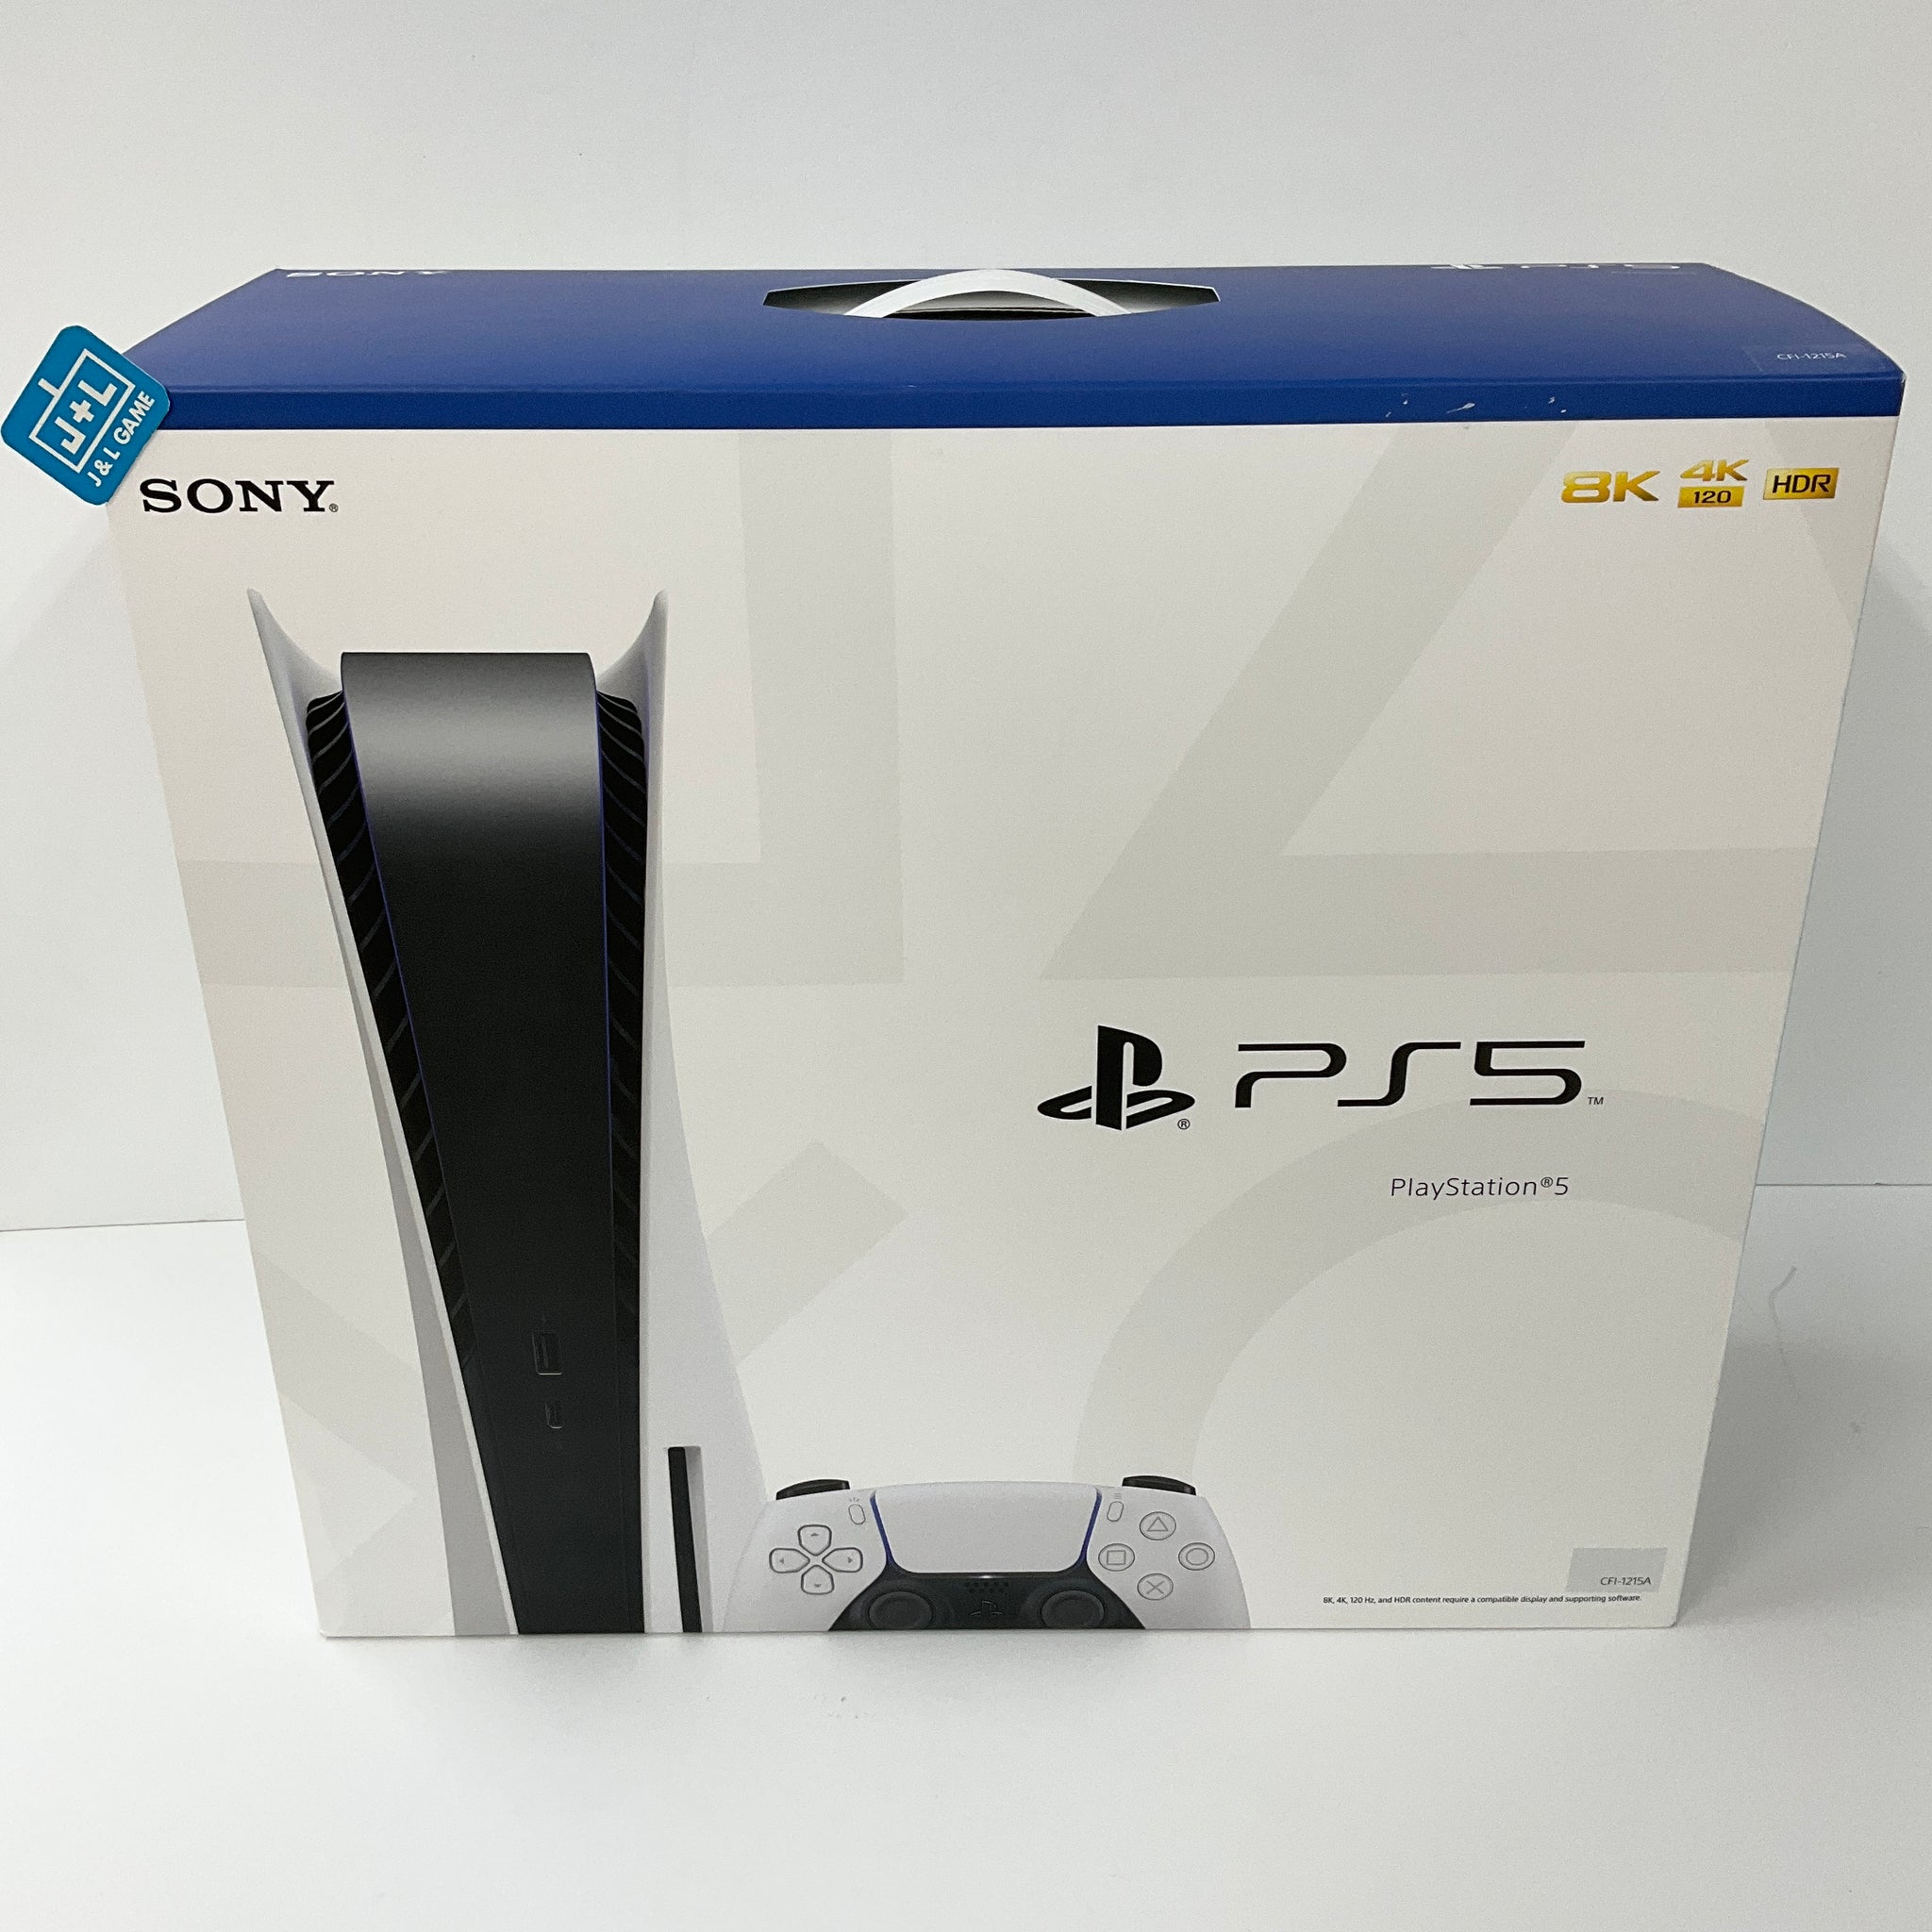 SONY PlayStation5 CFI-1000A01 クーポン26日まで